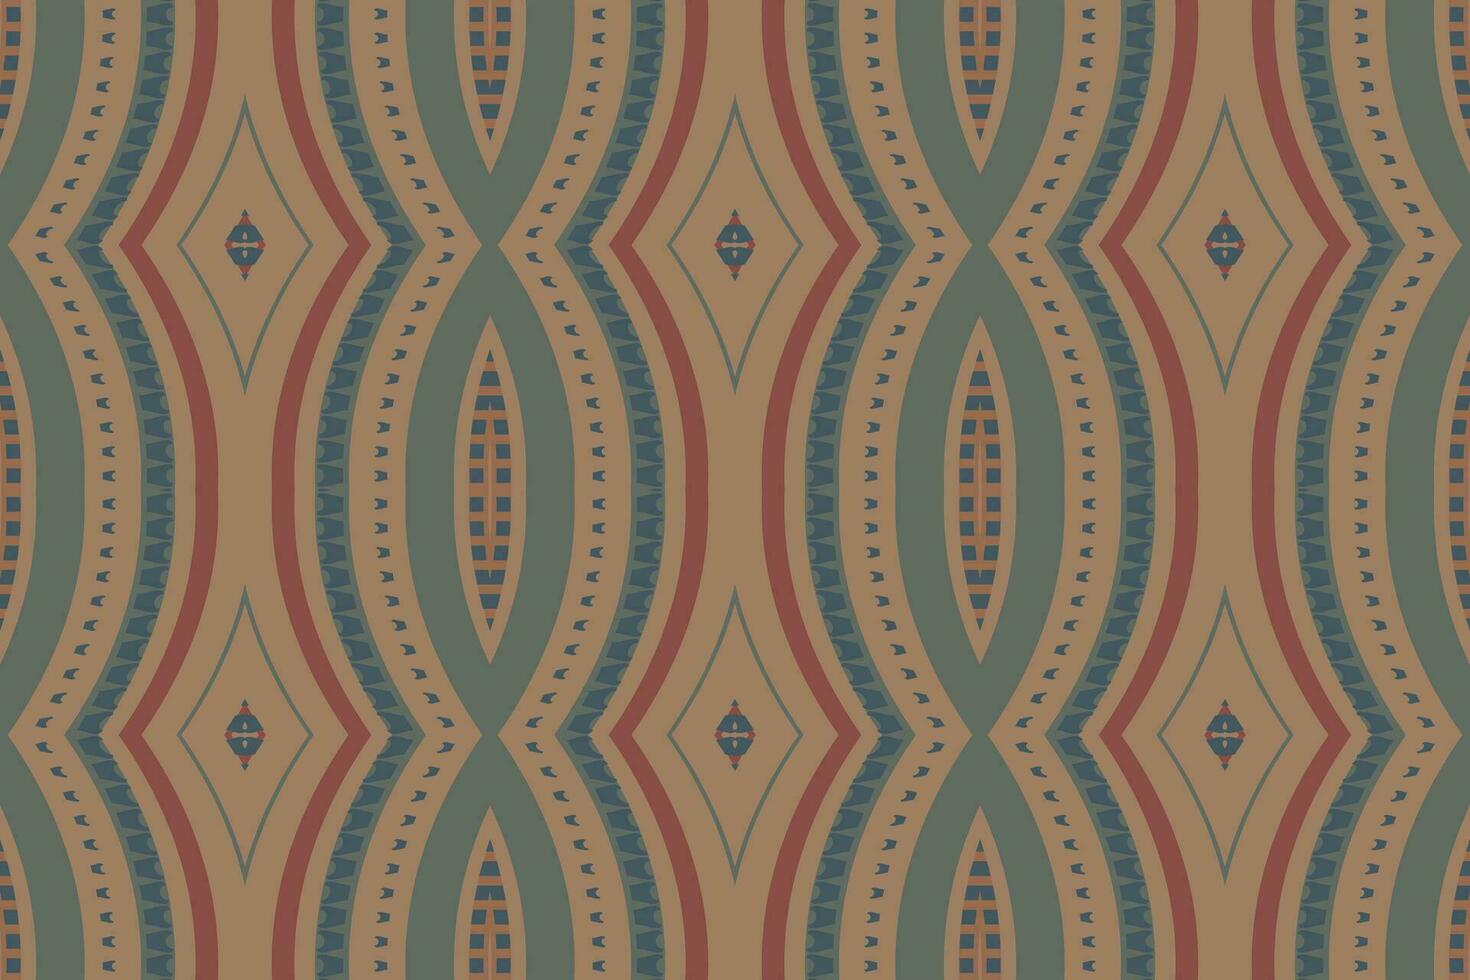 motief ikat paisley borduurwerk achtergrond. ikat ontwerp meetkundig etnisch oosters patroon traditioneel.azteken stijl abstract vector illustratie.ontwerp voor textuur, stof, kleding, verpakking, sarong.